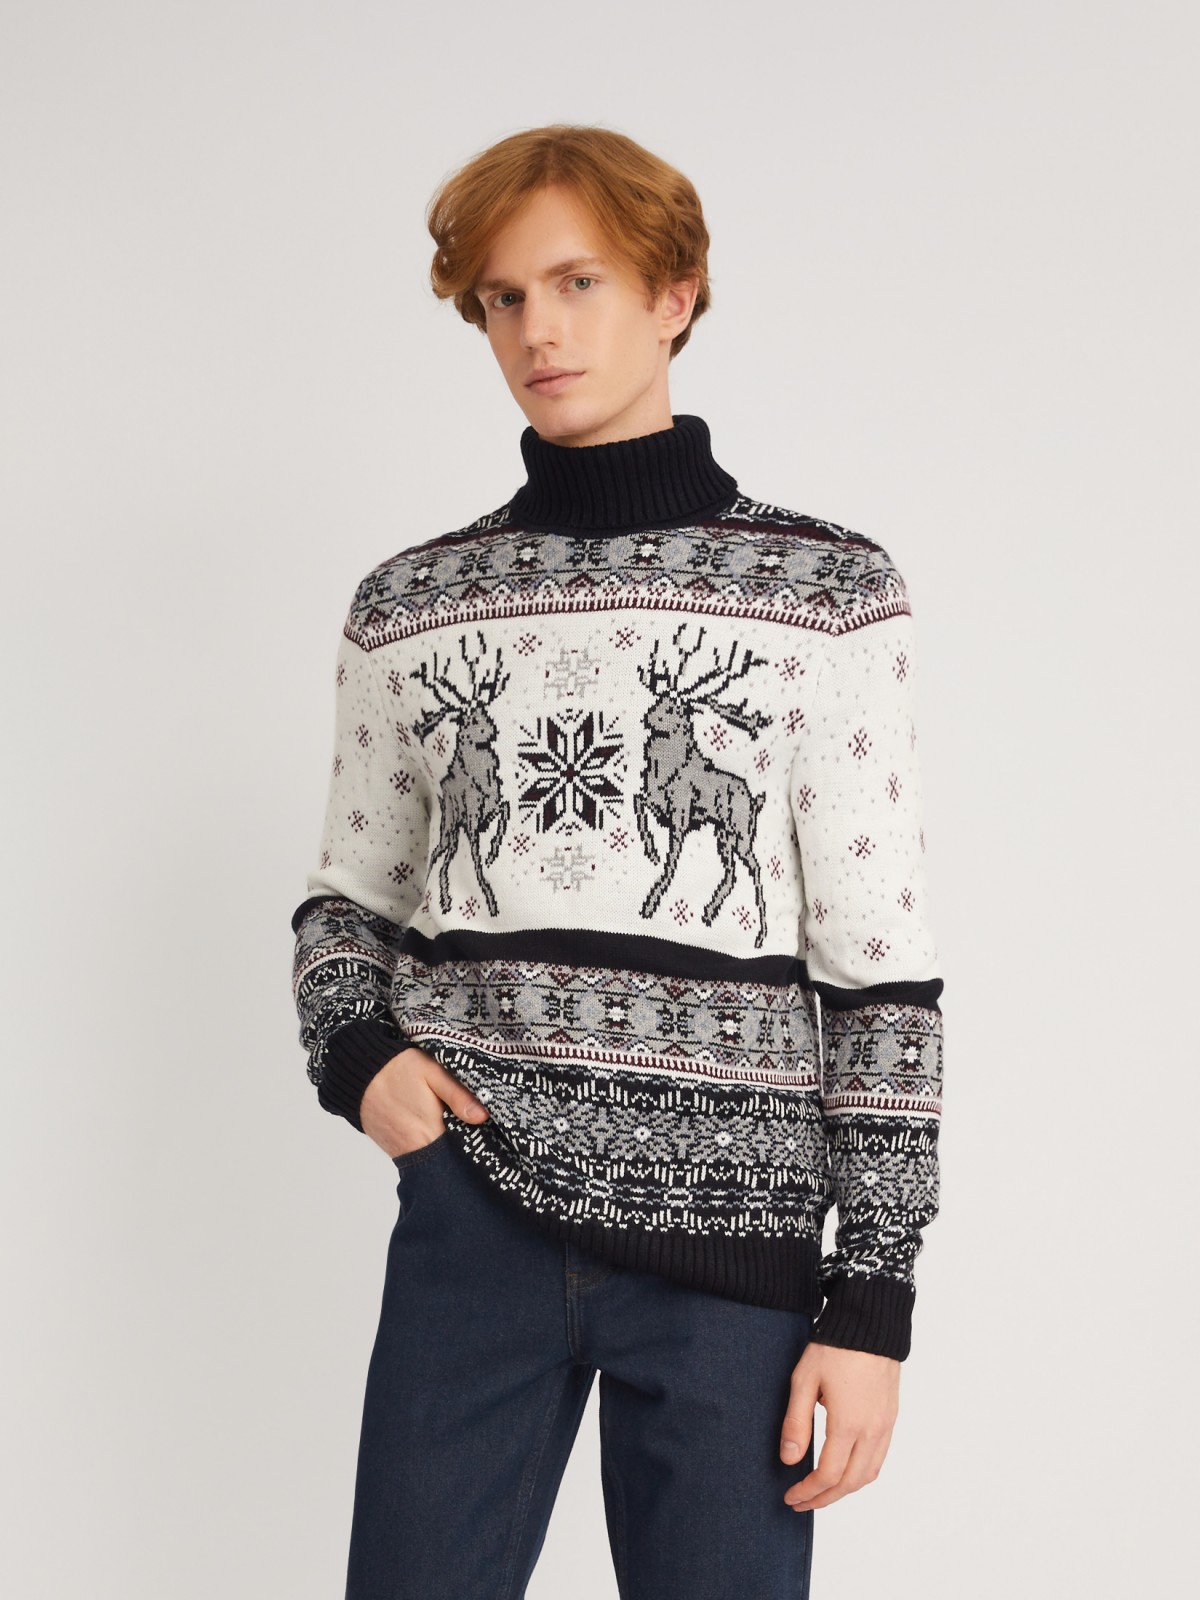 Вязаный свитер из акрила со скандинавским узором с оленями zolla 013446101083, цвет синий, размер M